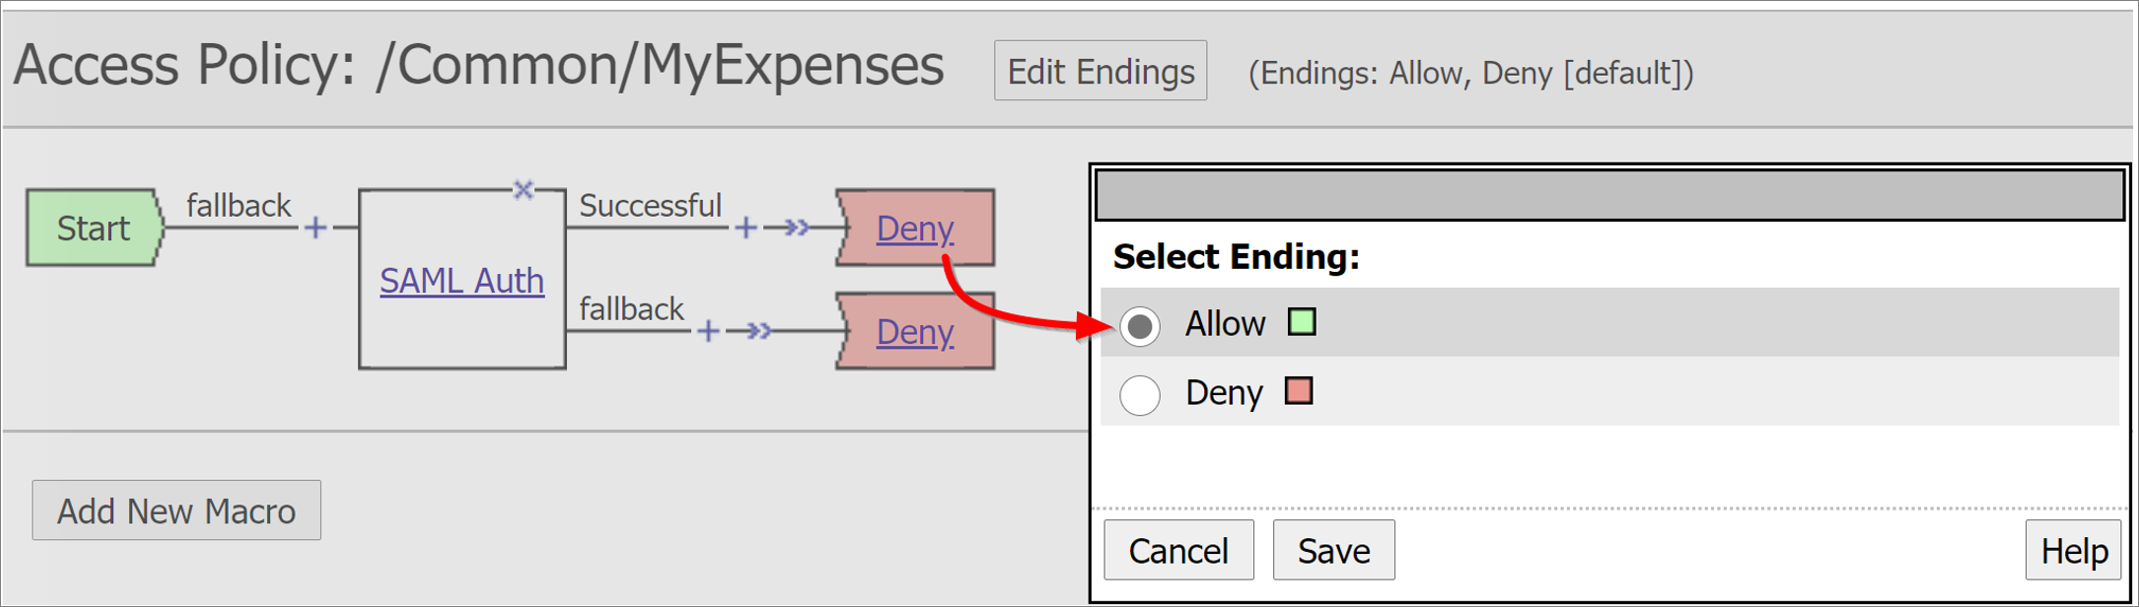 Captura de pantalla de la opción Deny (Denegar) en Access Policy (Directiva de acceso).